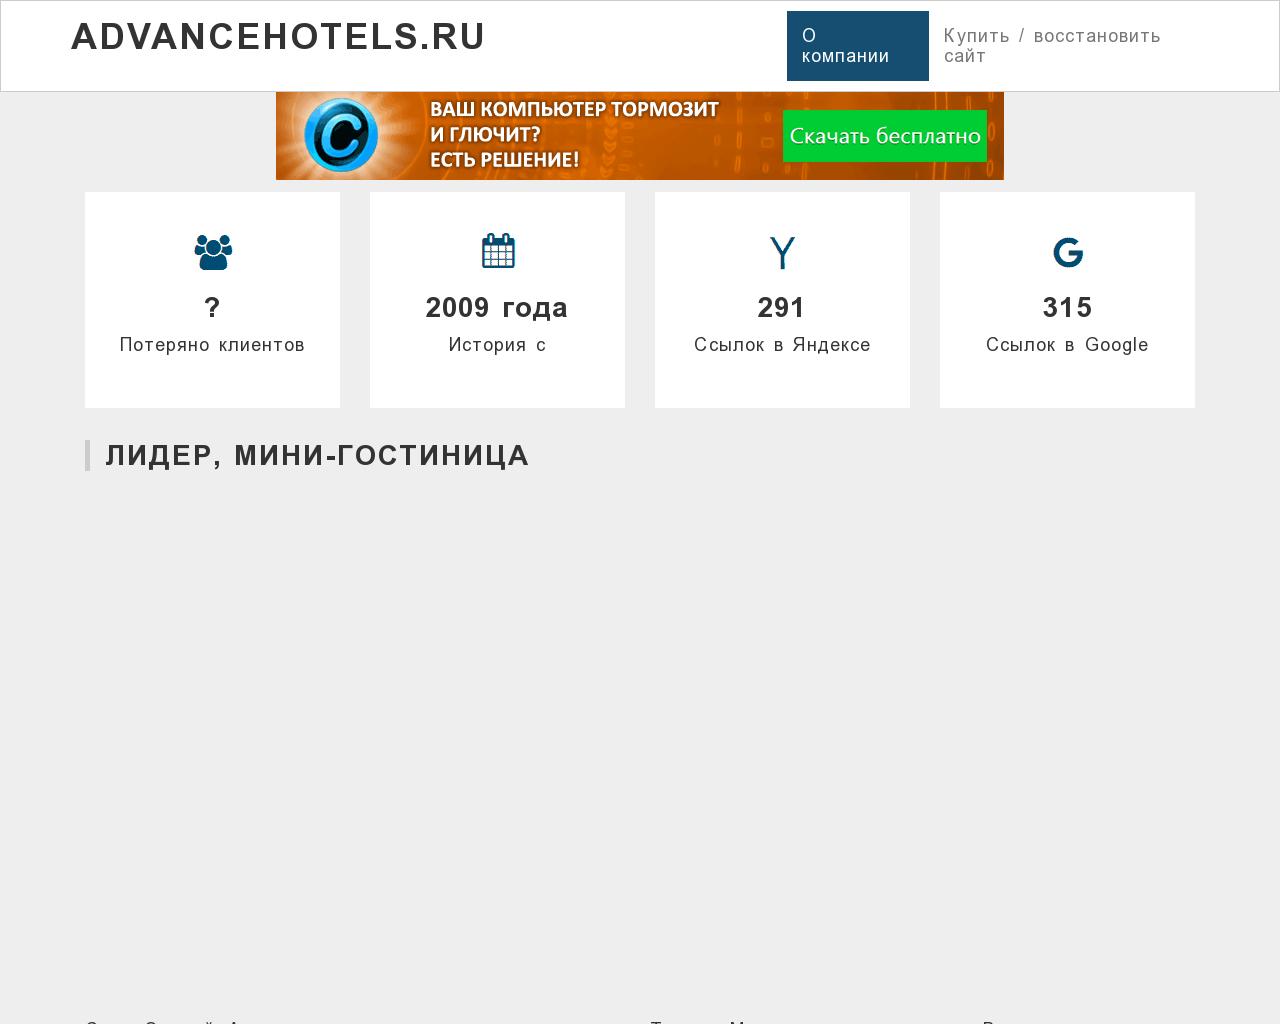 Изображение сайта advancehotels.ru в разрешении 1280x1024